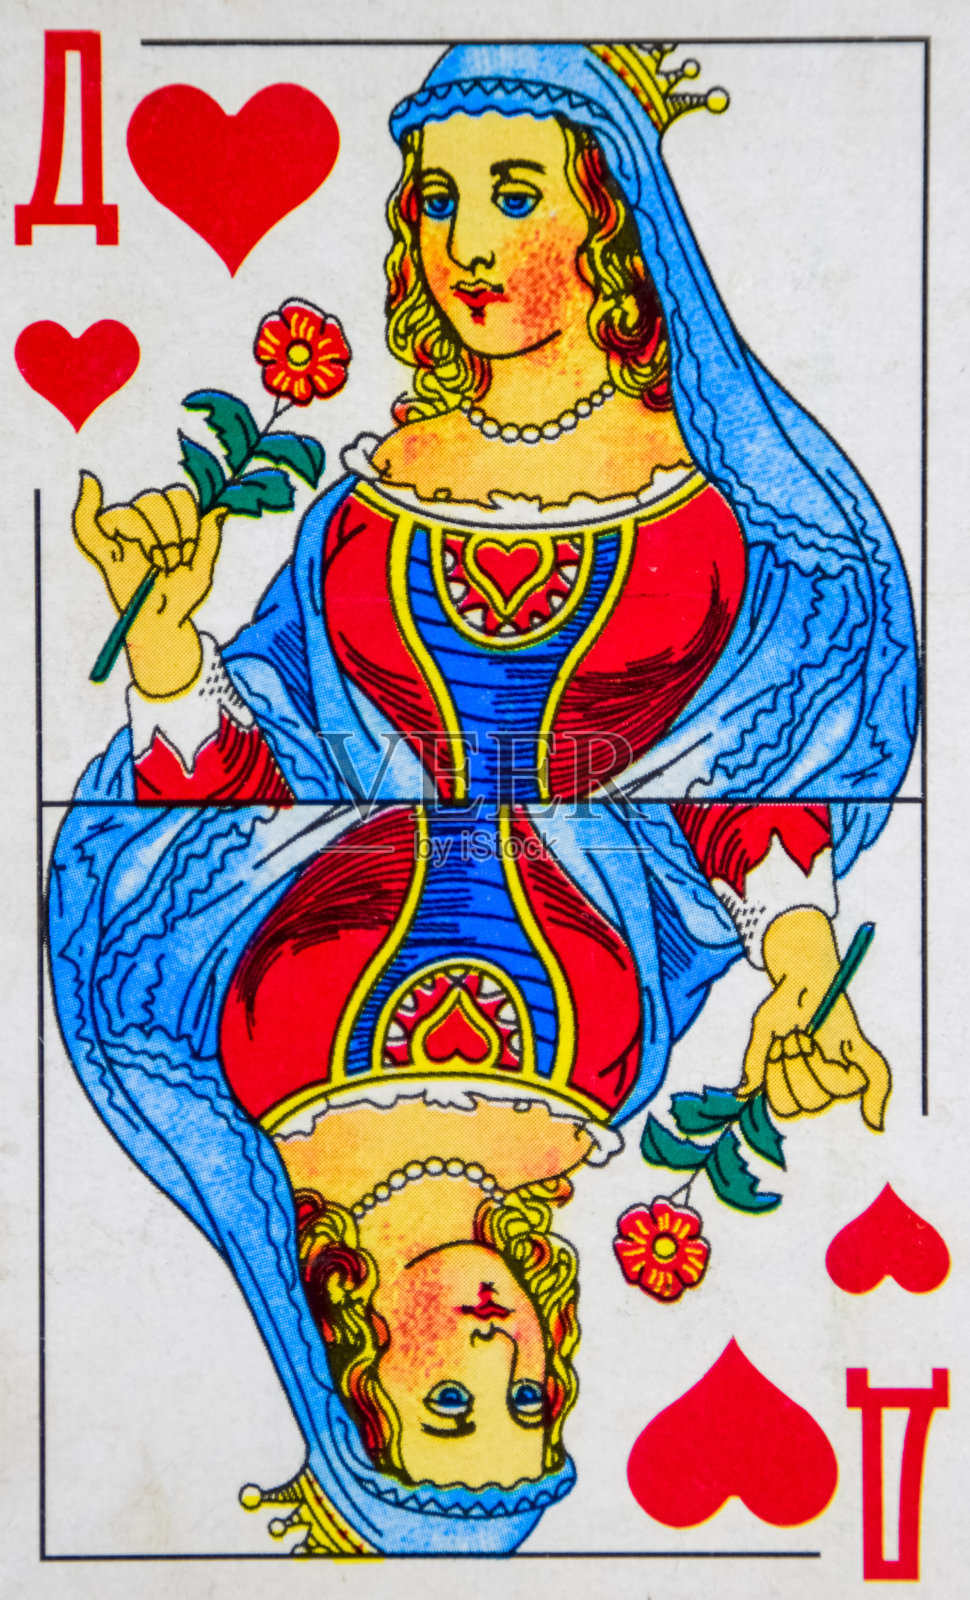 扑克牌红桃皇后-扑克牌套装插画图片素材